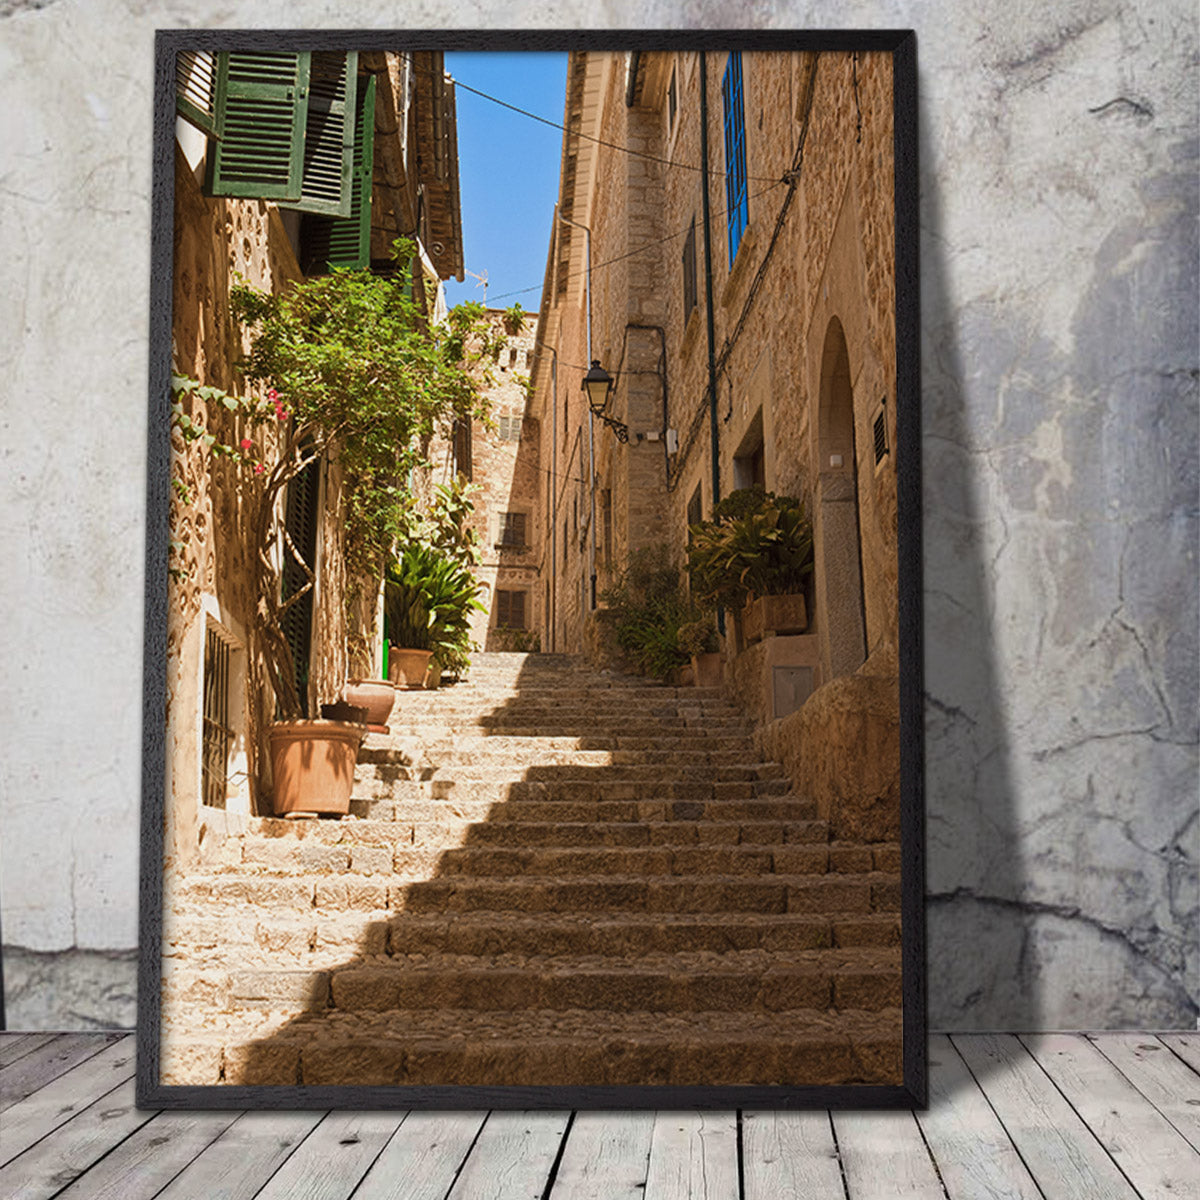 by plakat med sydlandsk stemning mellem stenhuse på Mallorca